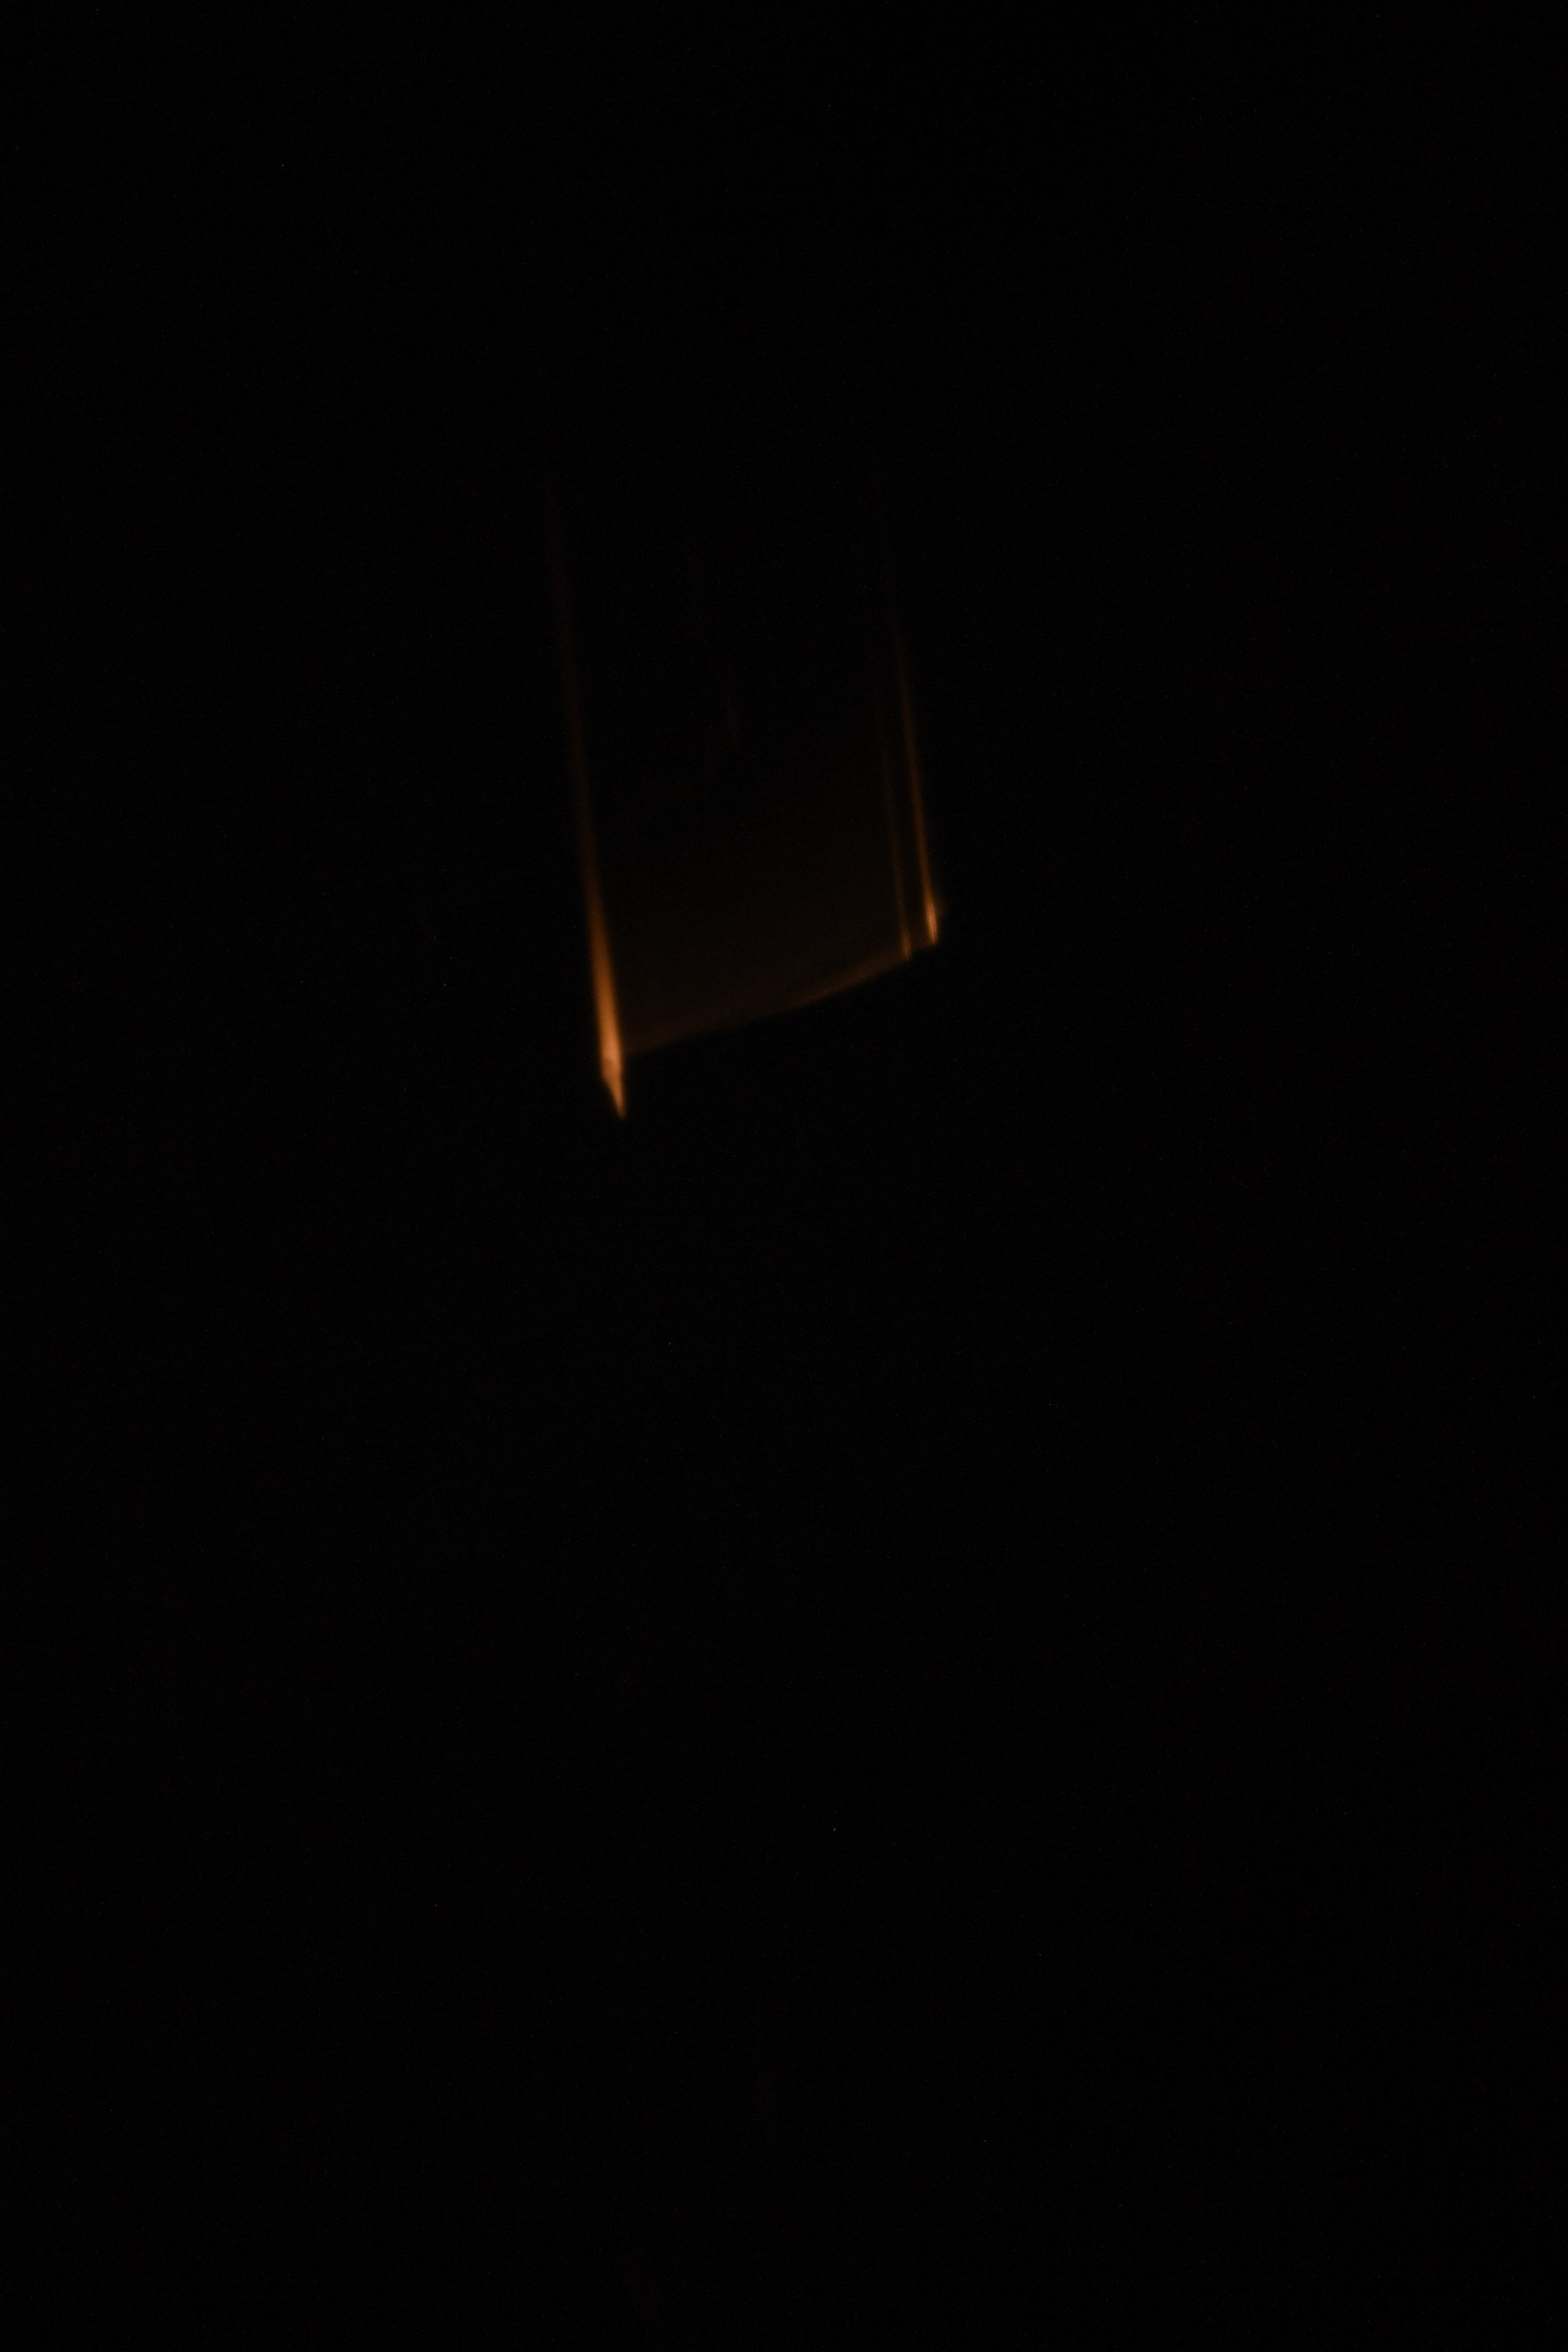 Scie luminose di fuoco possono essere viste contro l'oscurità dello spazio